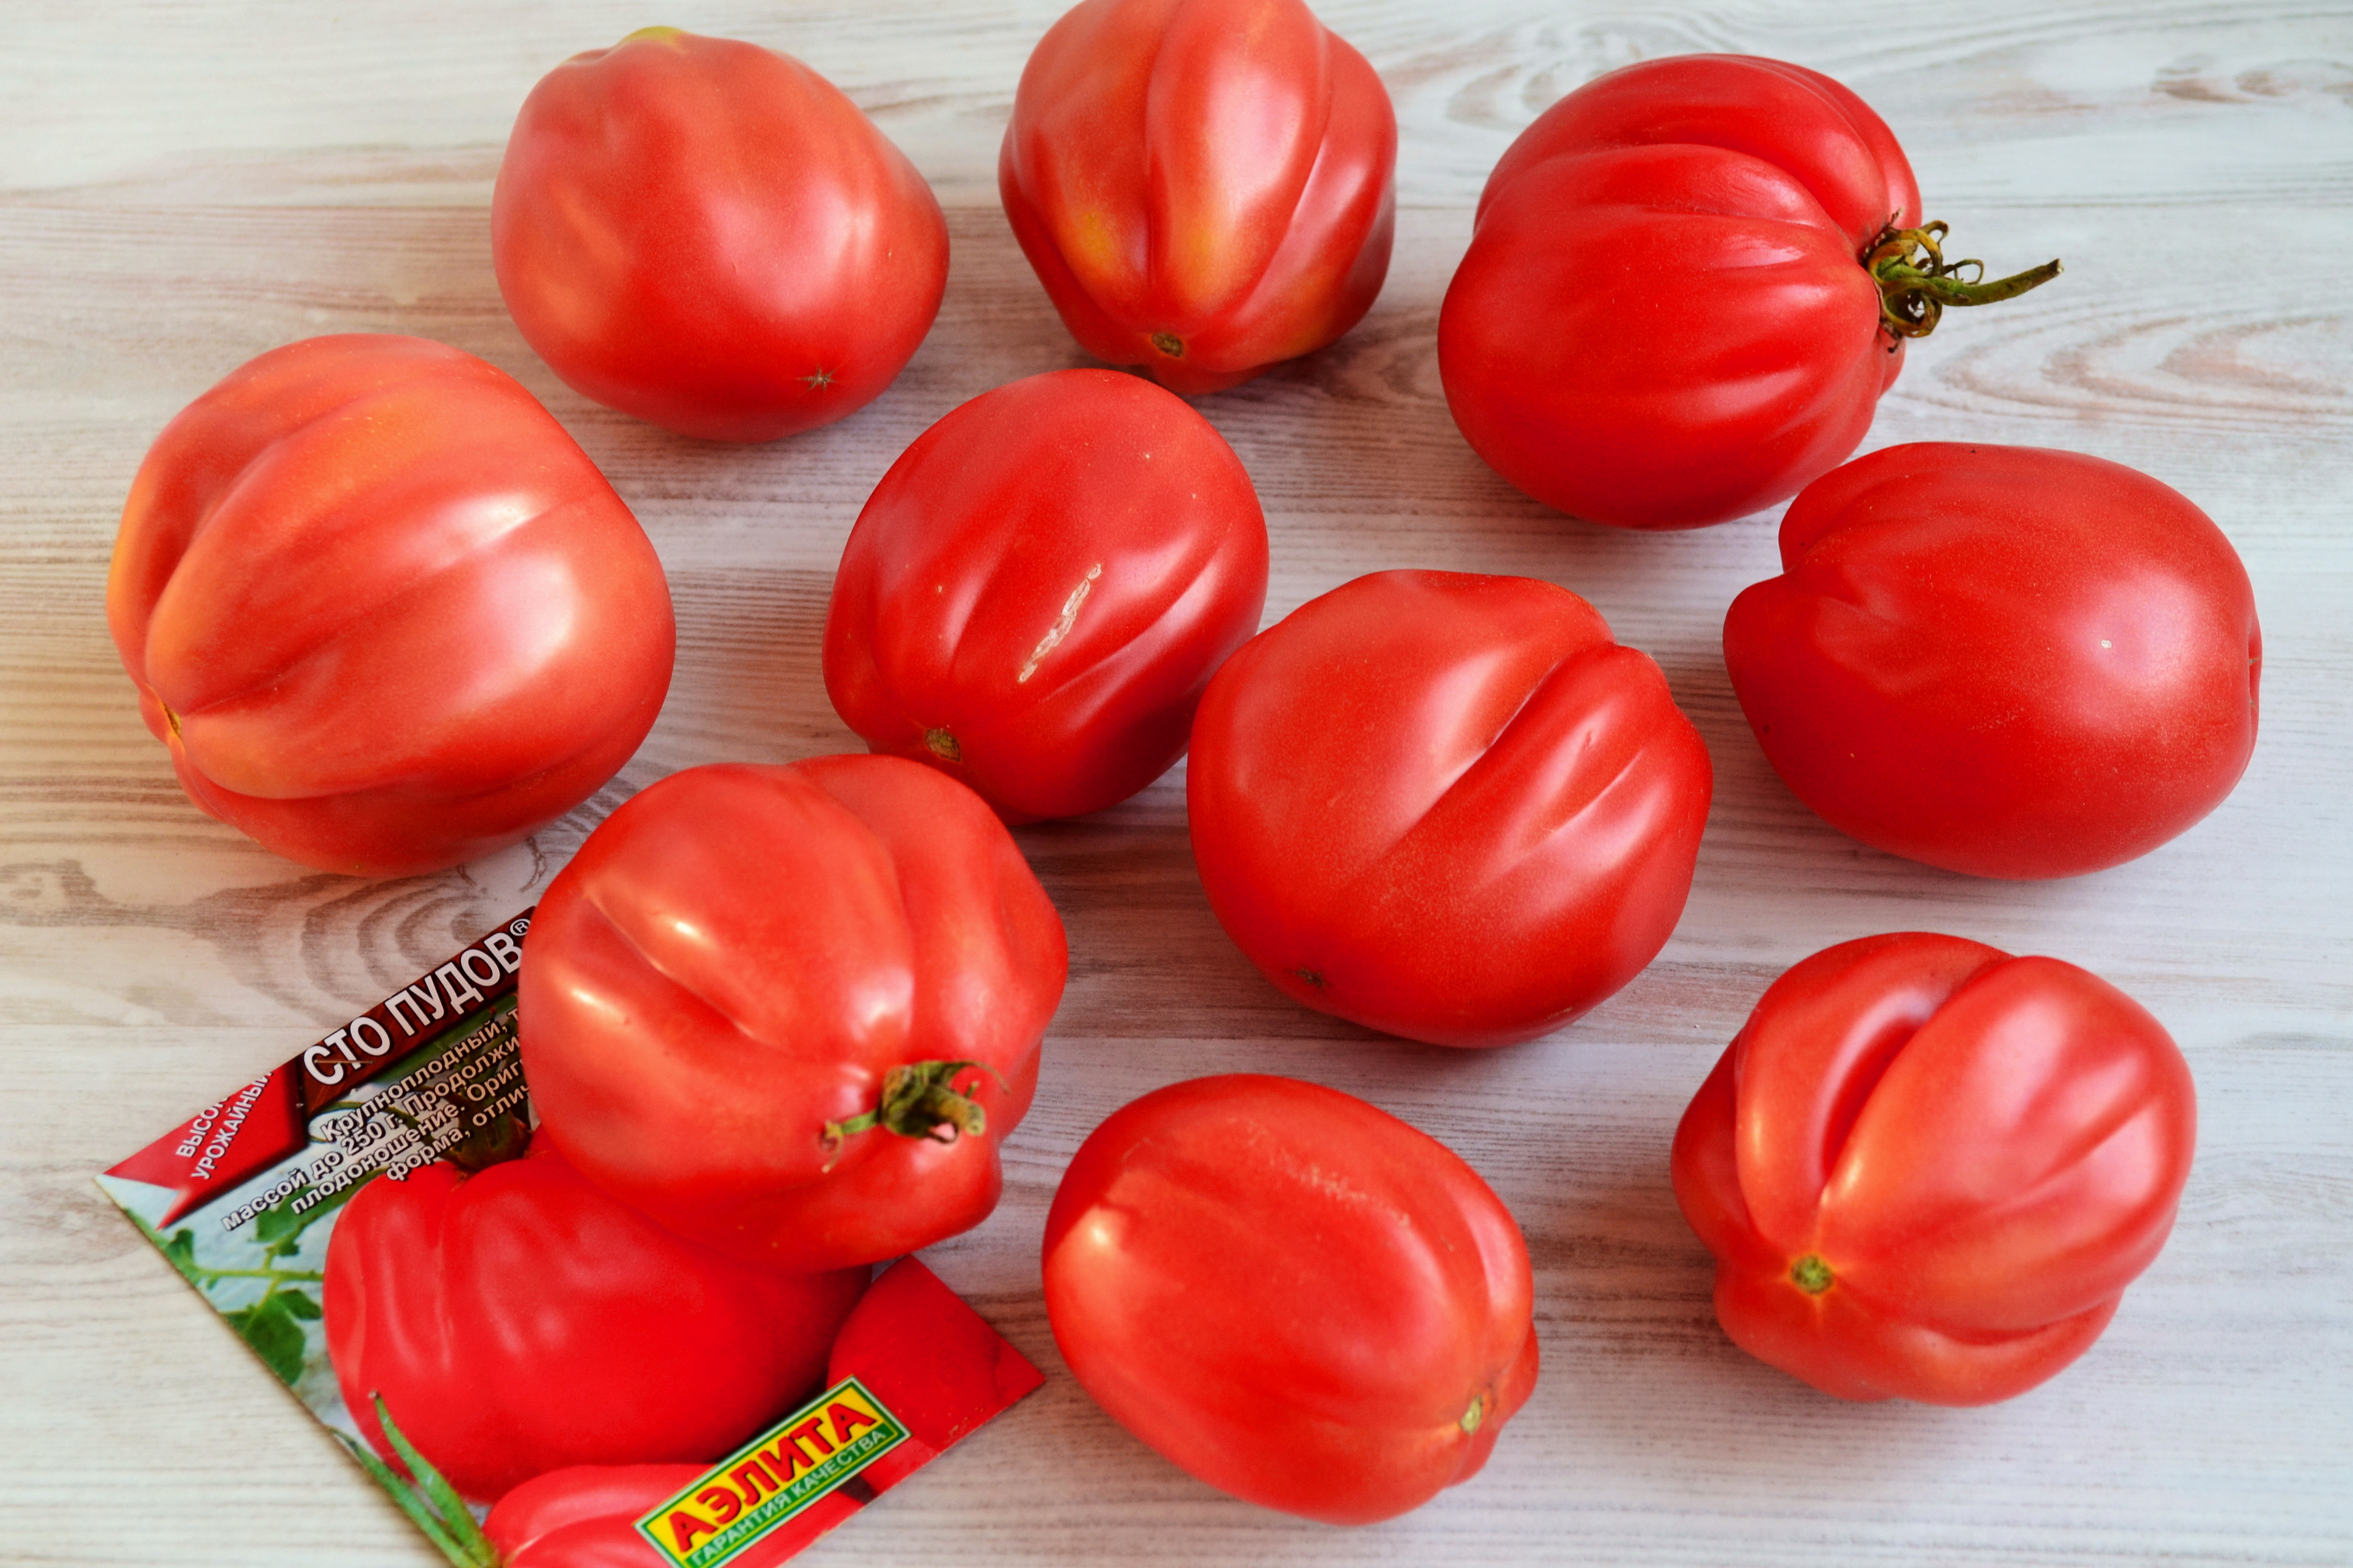 сто пудов томат фото